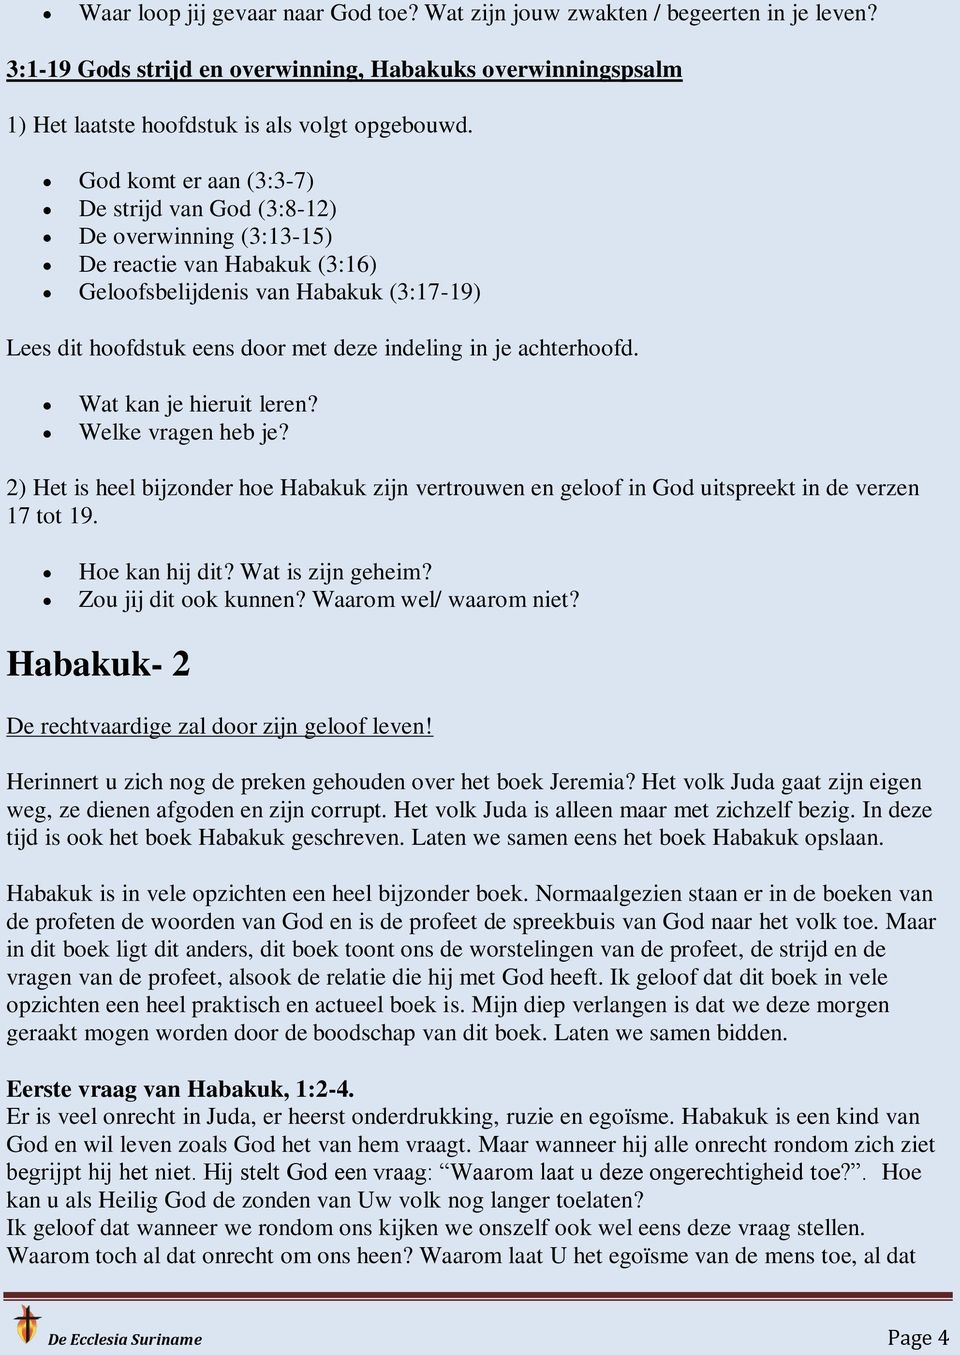 achterhoofd. Wat kan je hieruit leren? Welke vragen heb je? 2) Het is heel bijzonder hoe Habakuk zijn vertrouwen en geloof in God uitspreekt in de verzen 17 tot 19. Hoe kan hij dit?